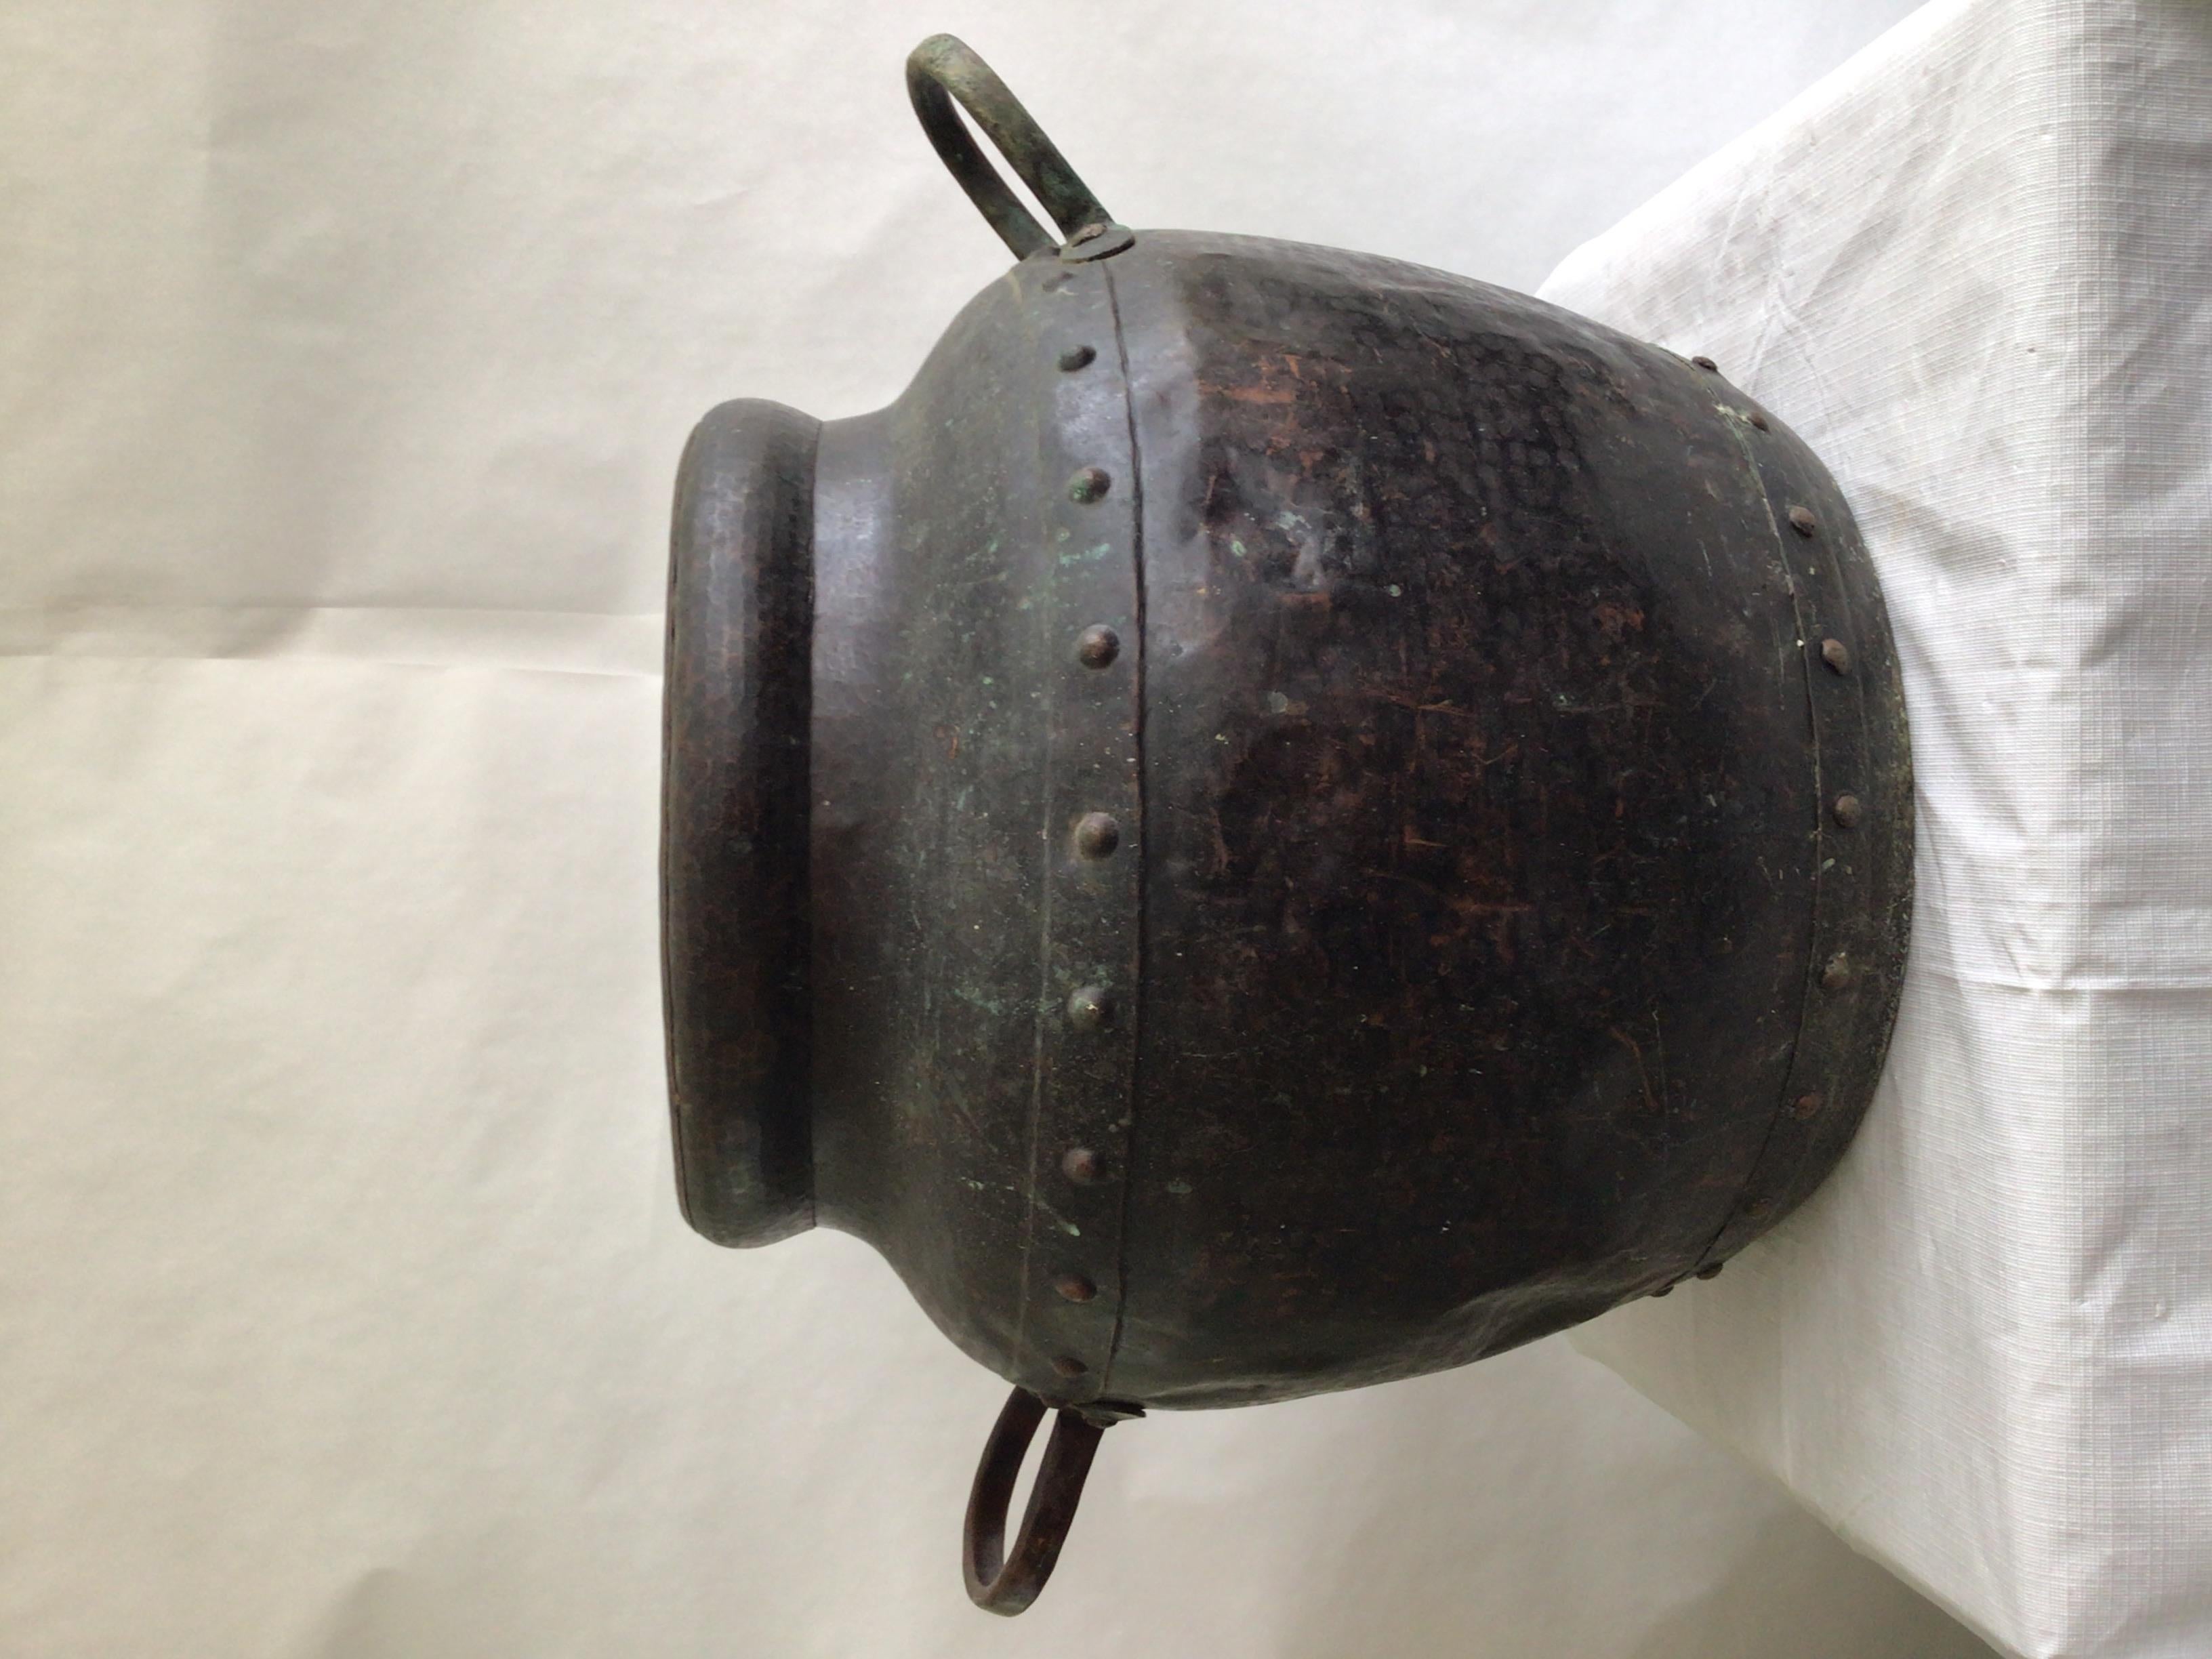 1940s Pot en cuivre clouté martelé à la main avec poignées
Belle patine et finition martelée 